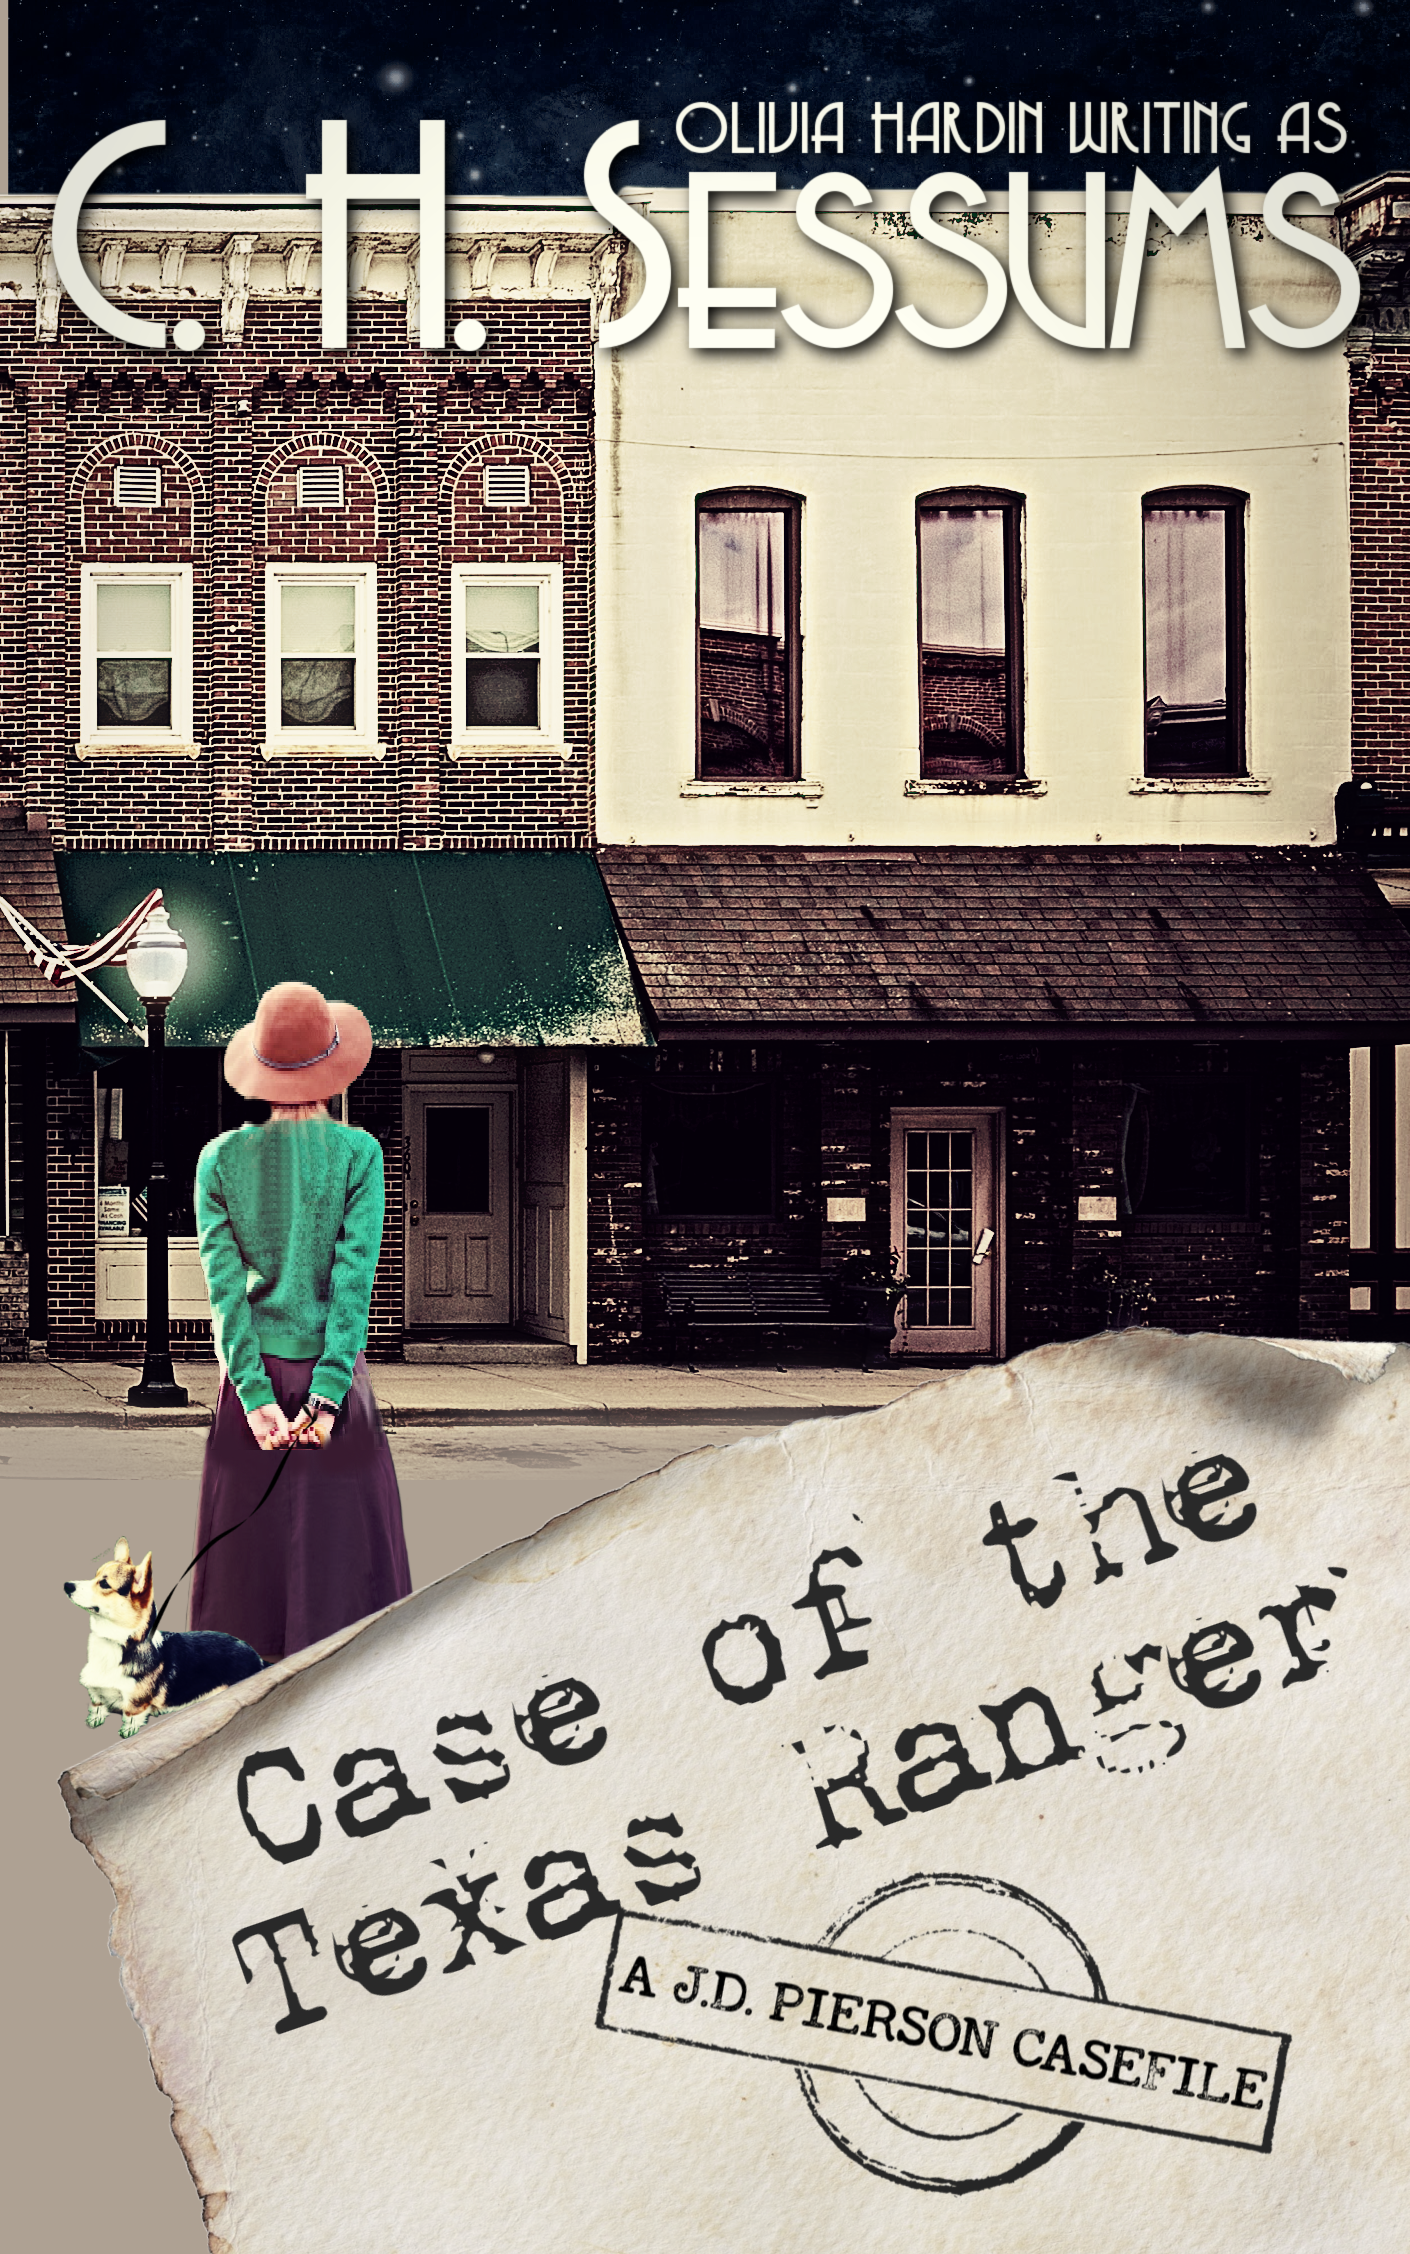 The case of the texas ranger